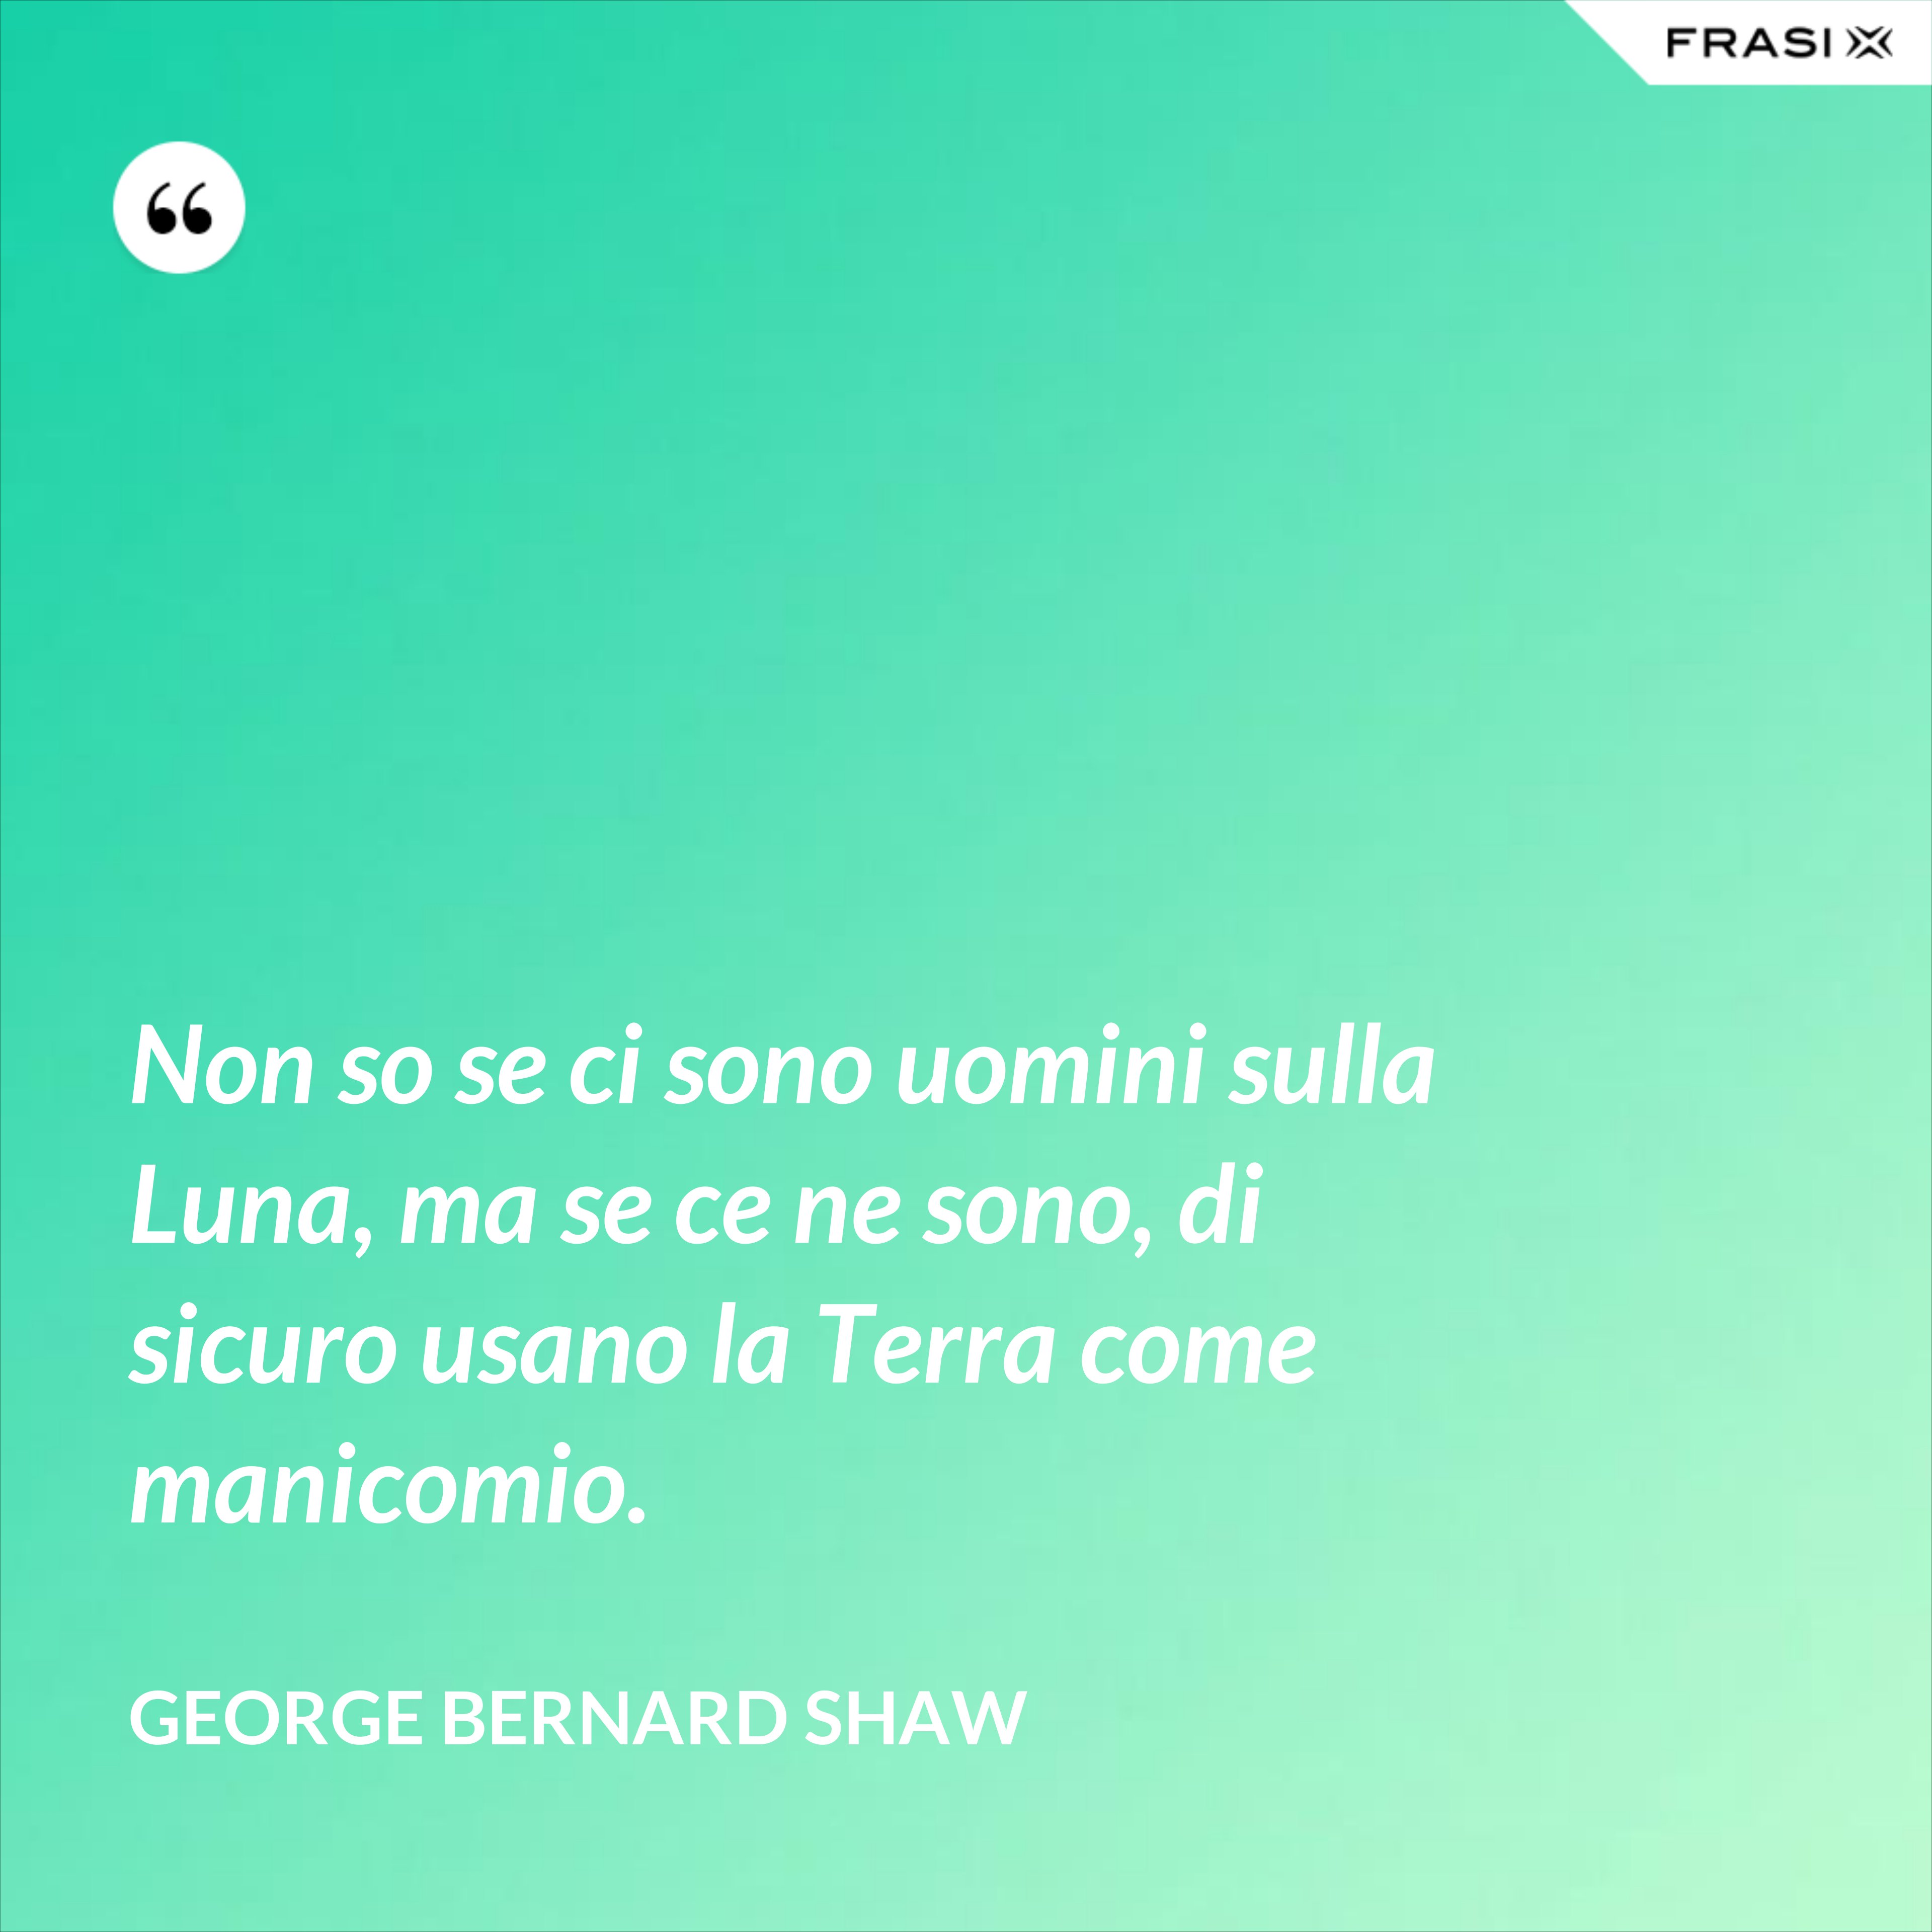 Non so se ci sono uomini sulla Luna, ma se ce ne sono, di sicuro usano la Terra come manicomio. - George Bernard Shaw